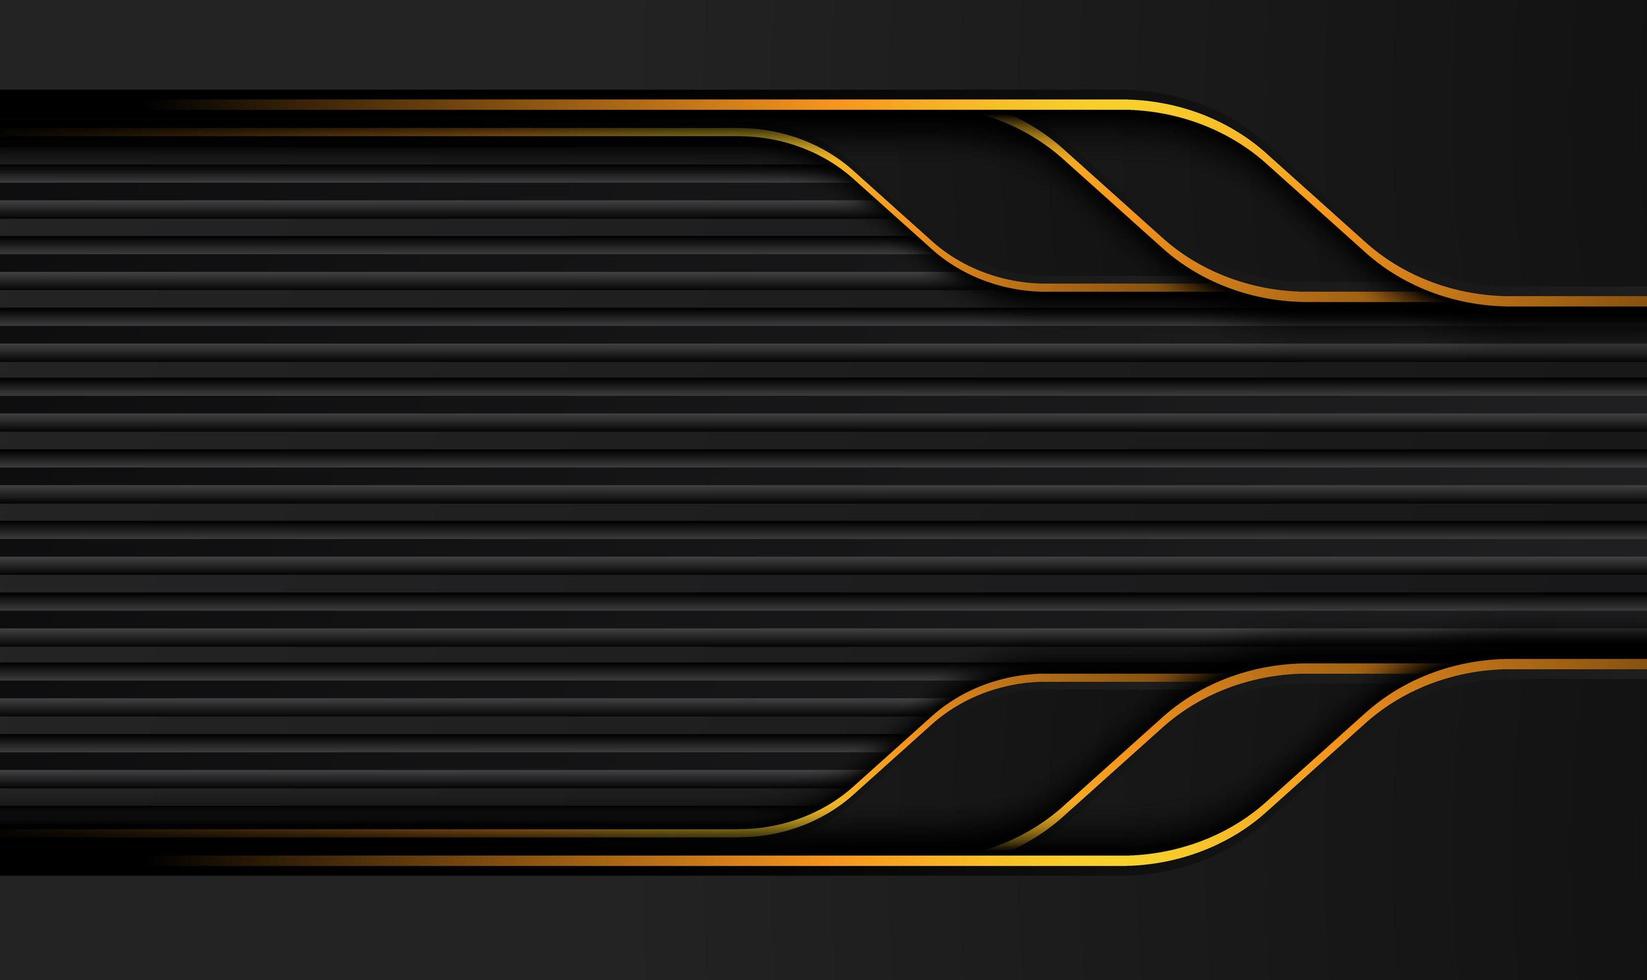 teknisk svart bakgrund med kontrasterande orangegula ränder. abstrakt vektor grafisk broschyr design